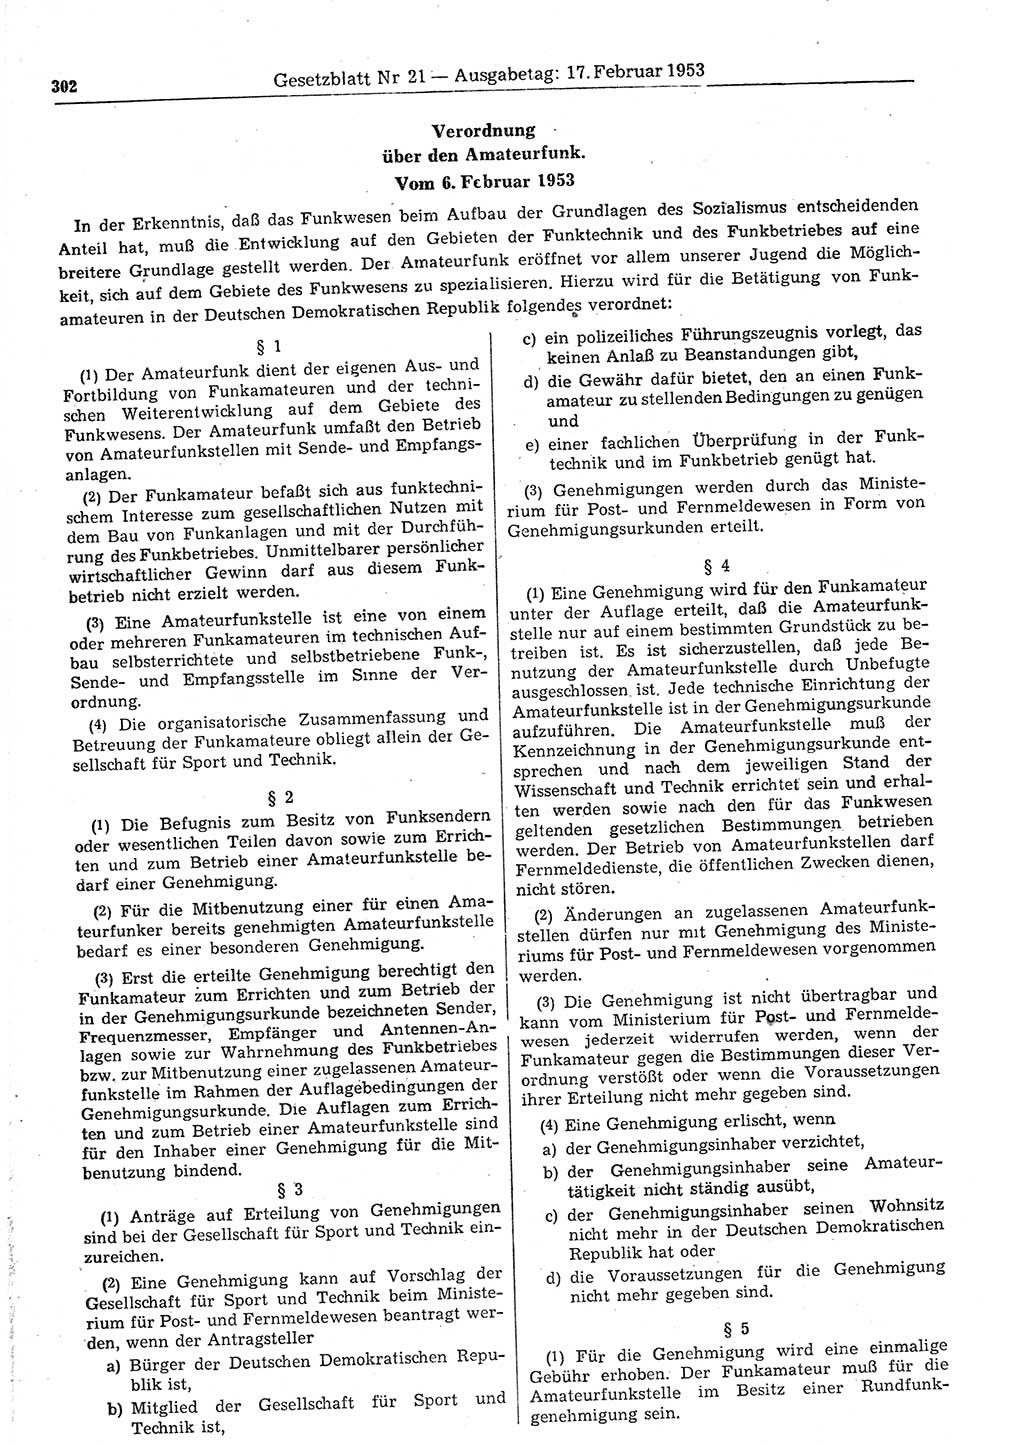 Gesetzblatt (GBl.) der Deutschen Demokratischen Republik (DDR) 1953, Seite 302 (GBl. DDR 1953, S. 302)